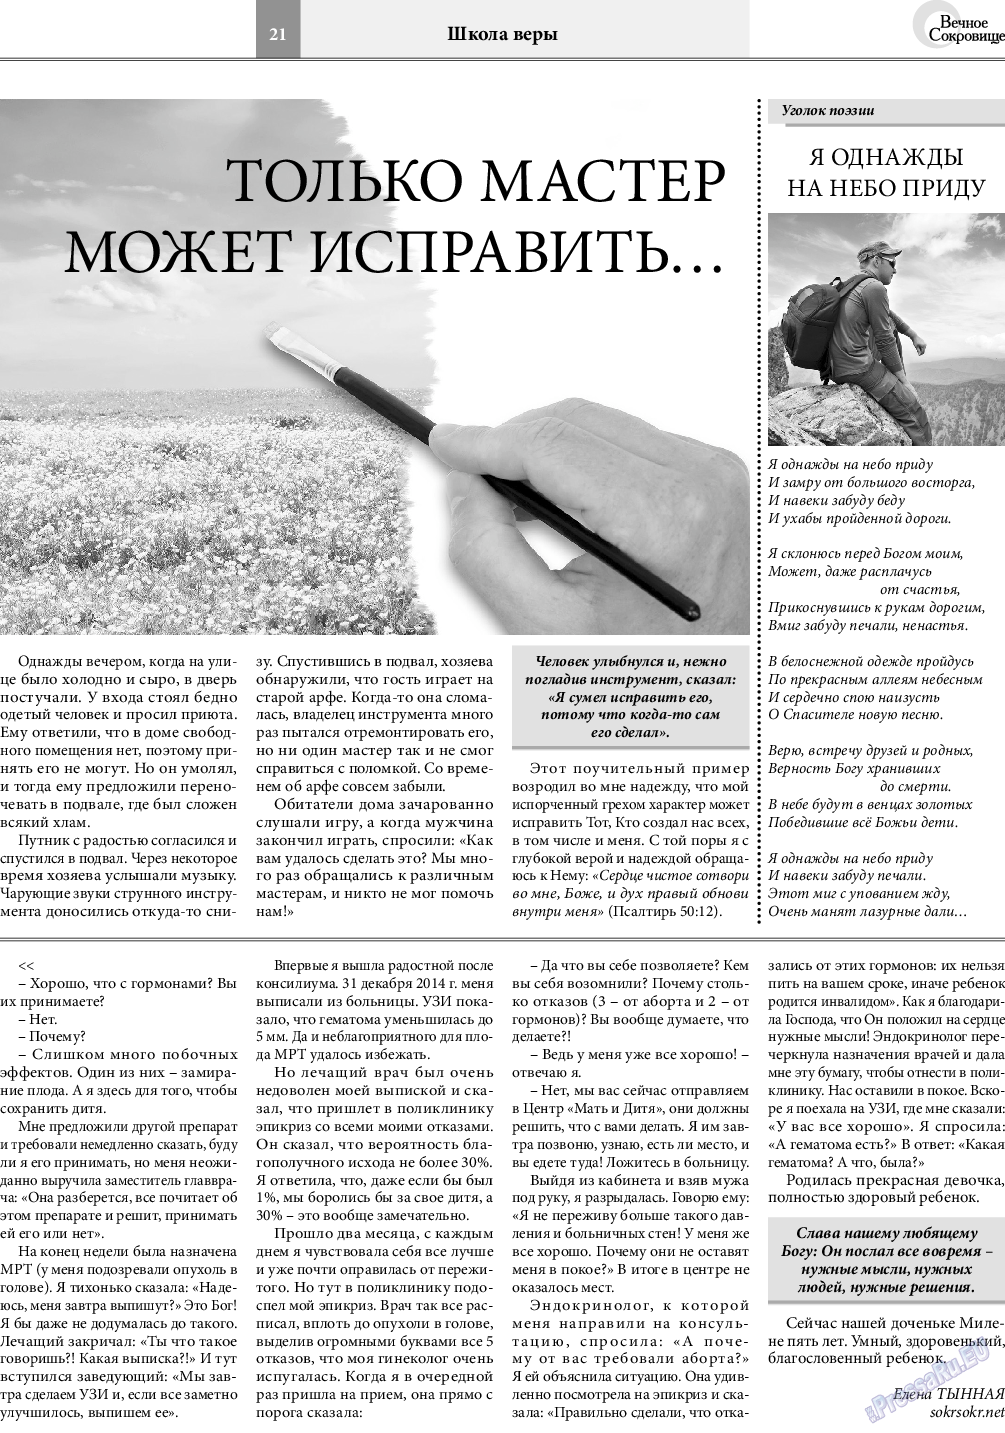 Вечное сокровище, газета. 2021 №4 стр.21